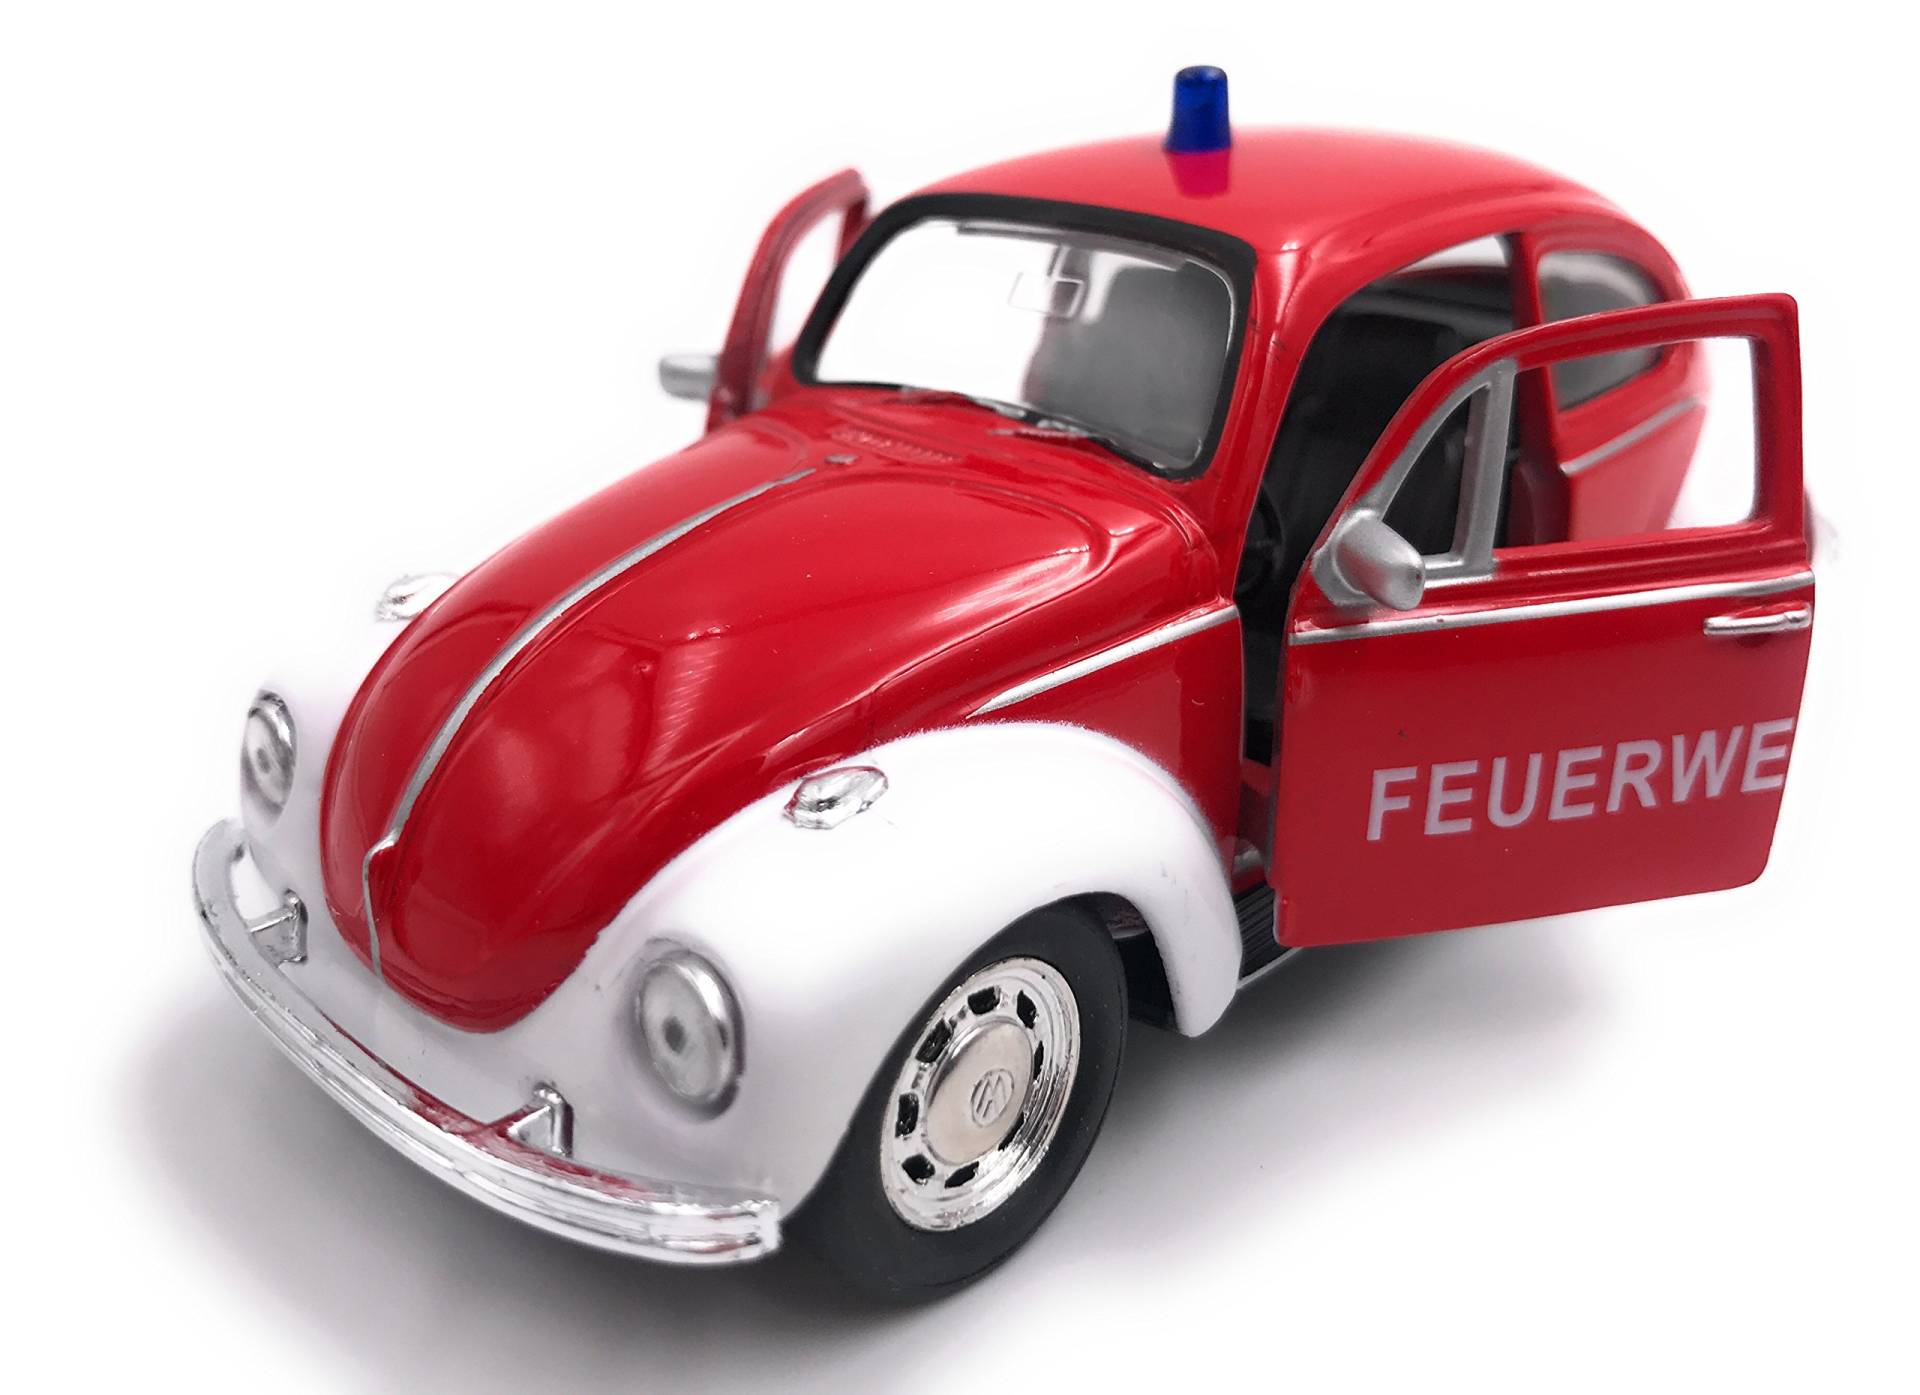 H-Customs Käfer Feuerwehr Modellauto Auto rot Lizenzprodukt 1:34-1:39 OVP von H-Customs